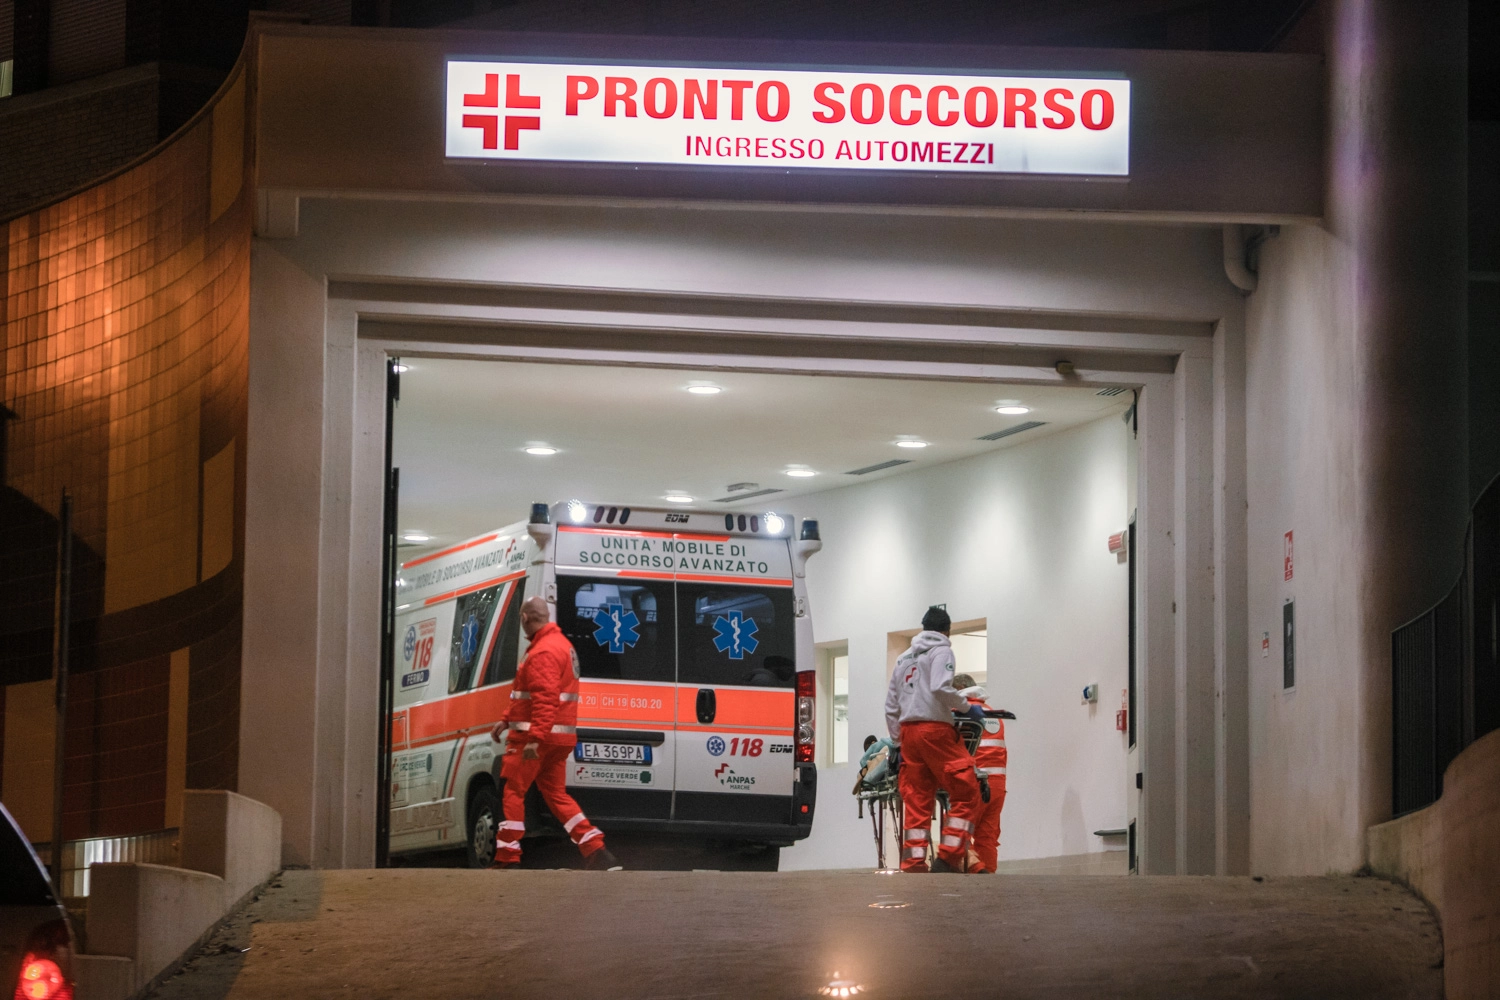 Pronto soccorso Emilia Romagna: 100 euro all'ora ai medici che lavorano in straordinario